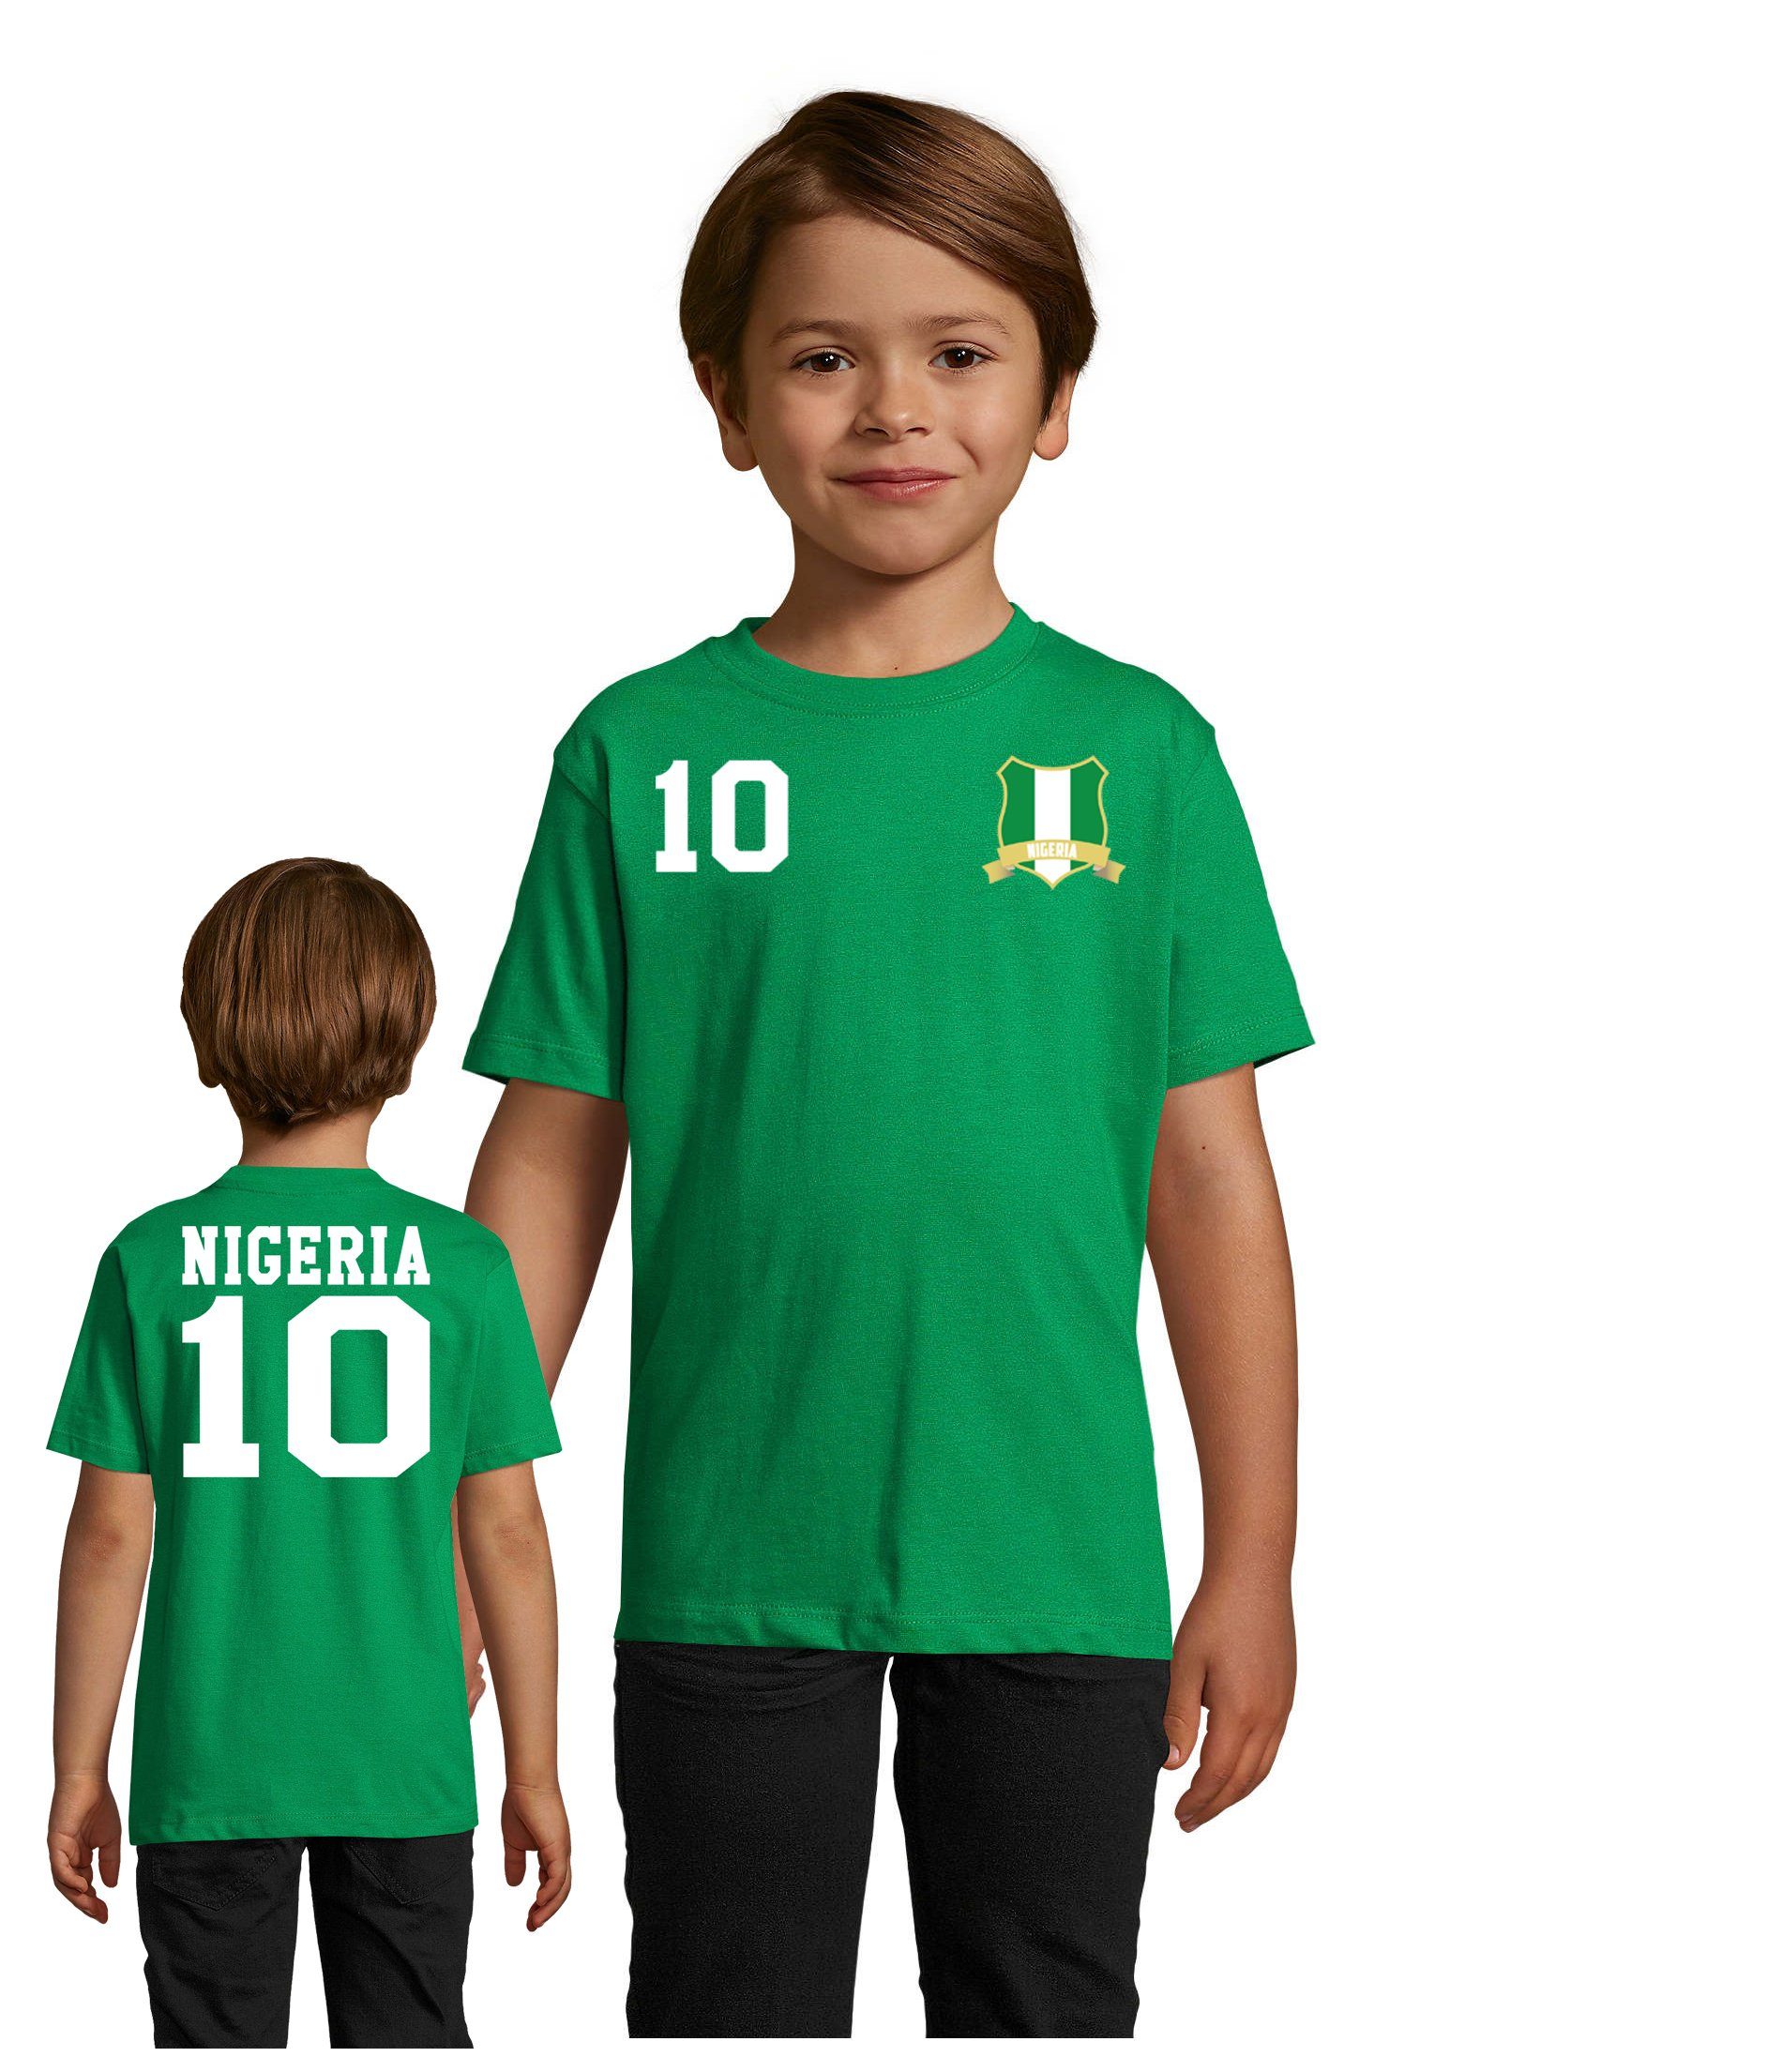 Blondie & Brownie T-Shirt Kinder Nigeria Sport Trikot Fußball Weltmeister Meister WM Afrika Cup